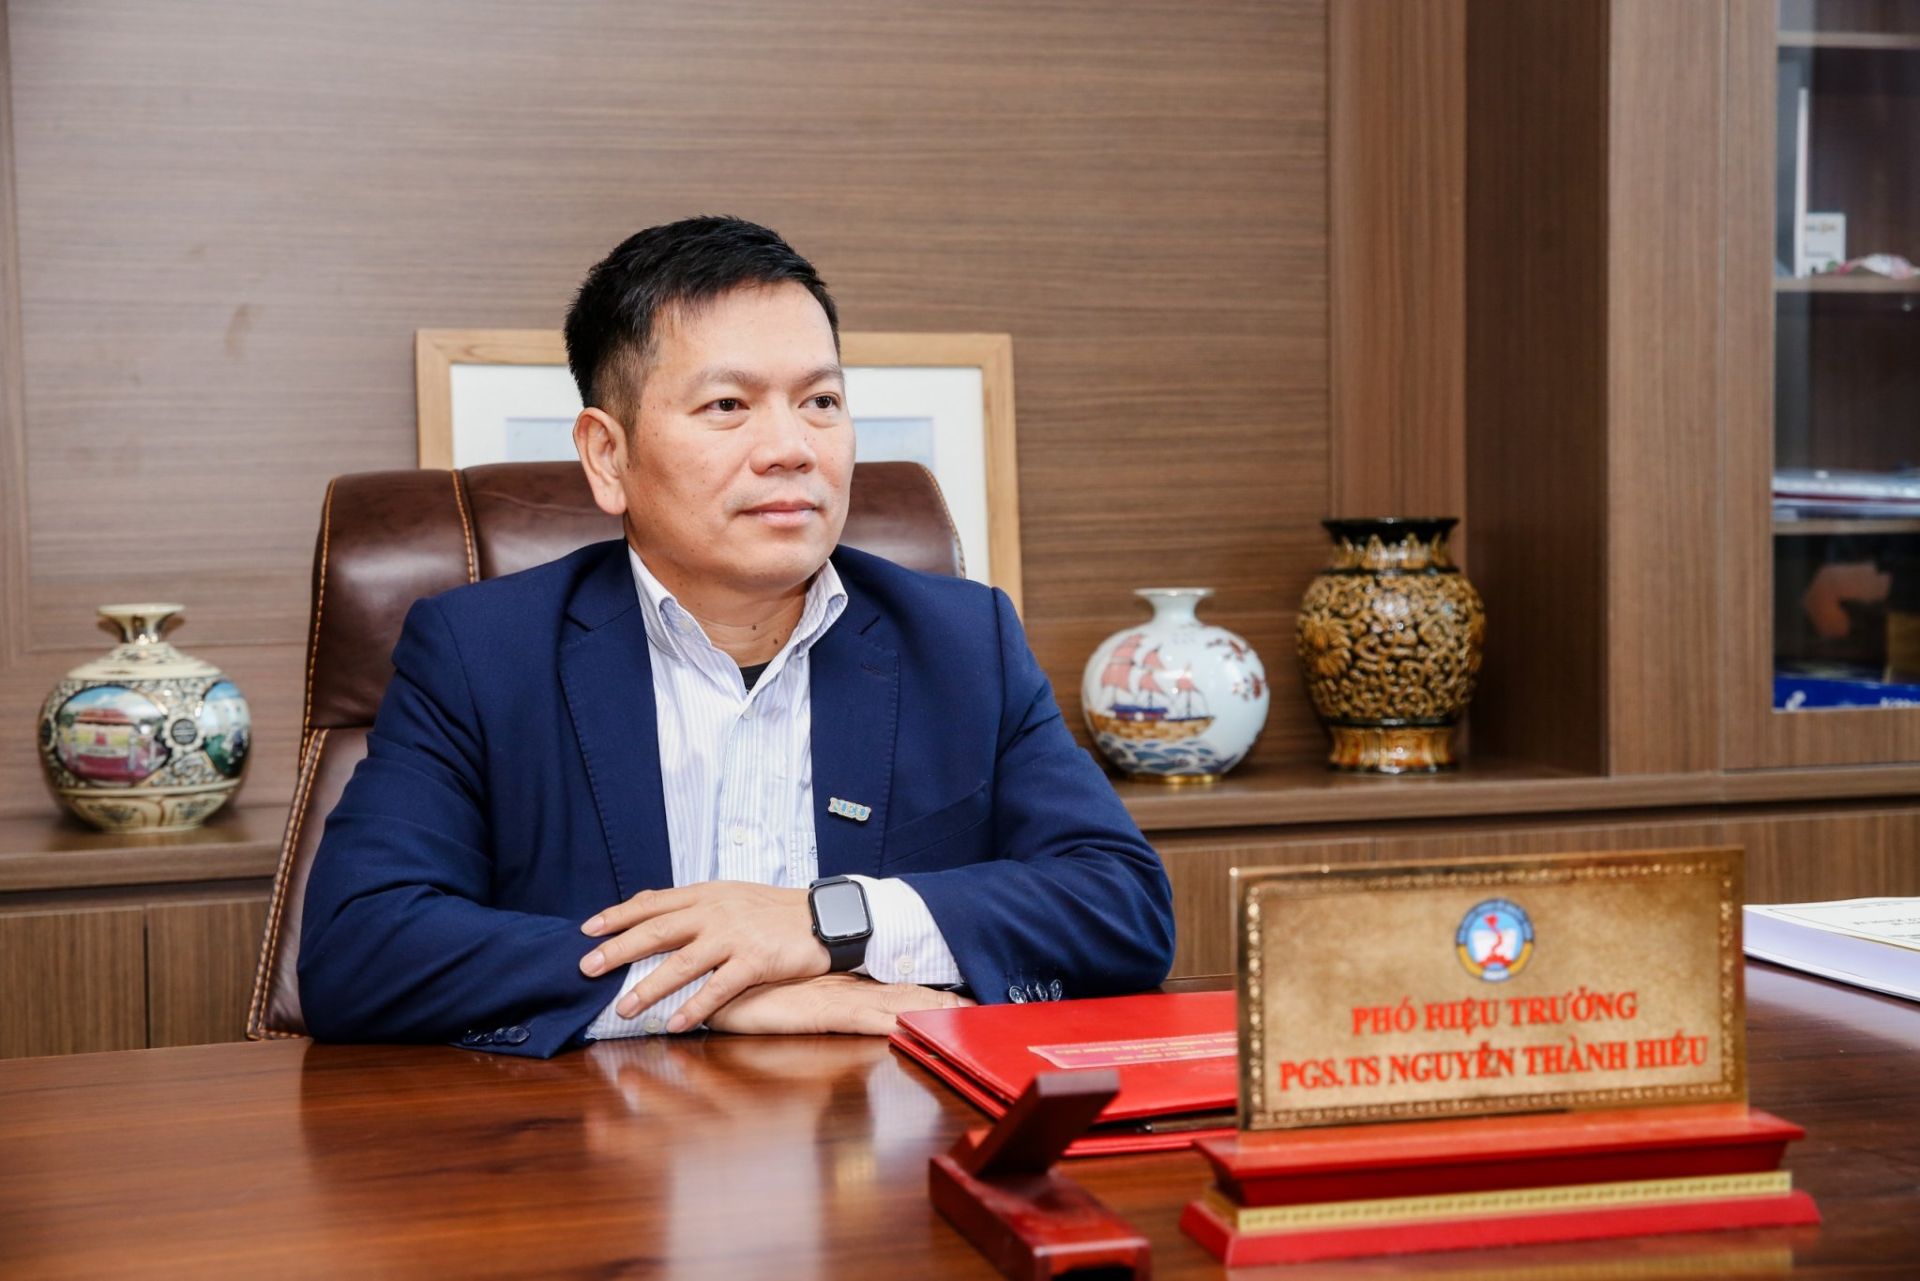 PGS.TS Nguyễn Thành Hiếu: Đại học Kinh tế Quốc dân định hướng nằm trong top trường hàng đầu khu vực